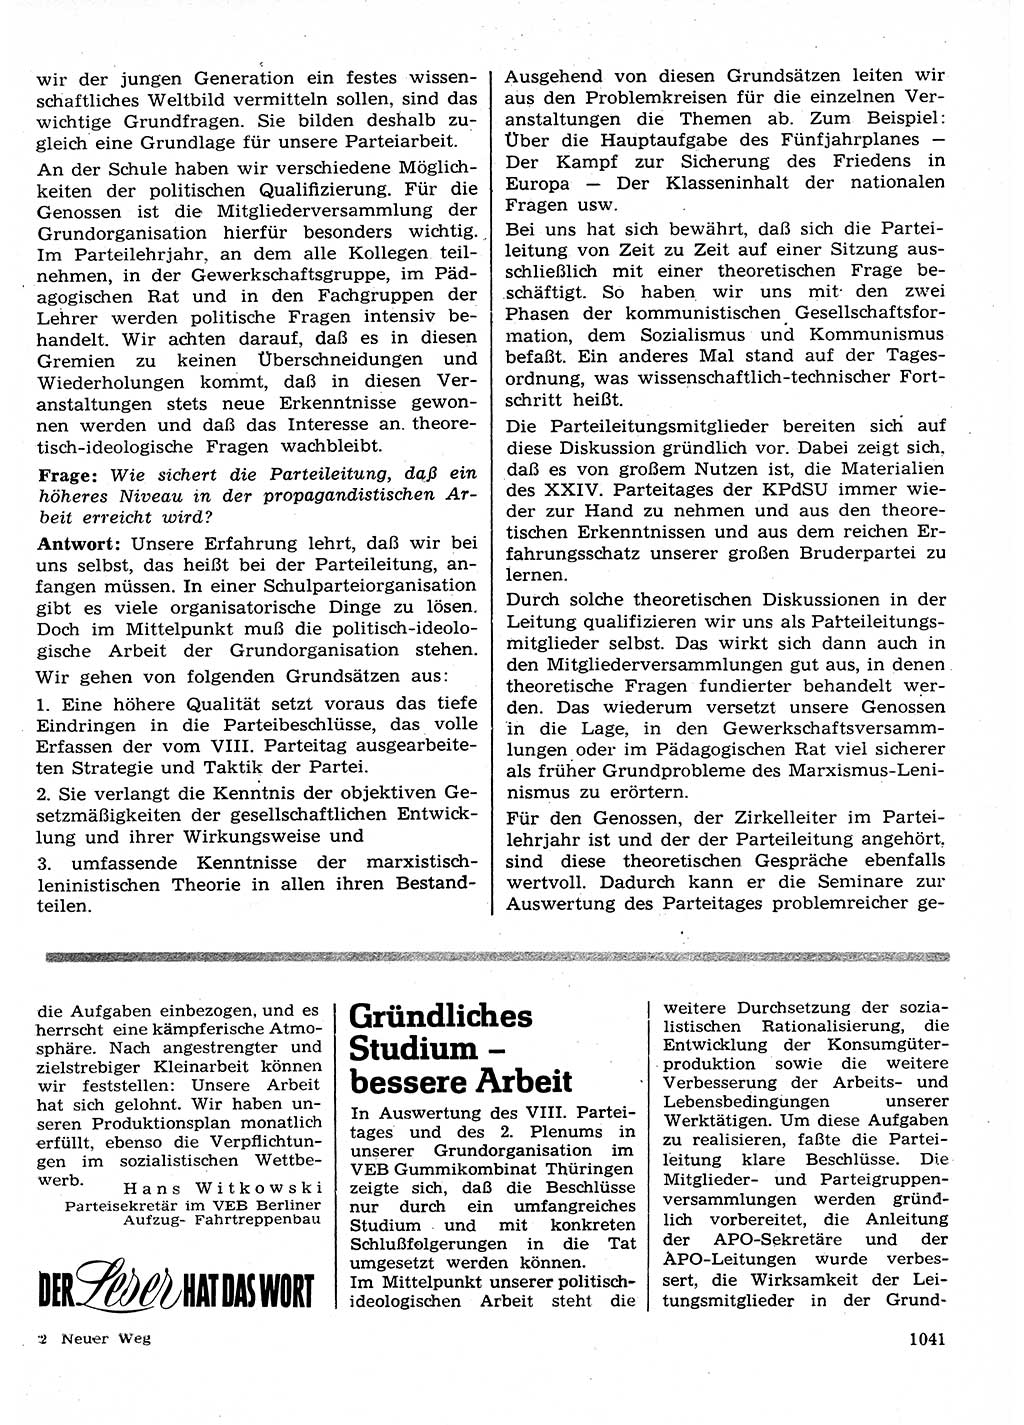 Neuer Weg (NW), Organ des Zentralkomitees (ZK) der SED (Sozialistische Einheitspartei Deutschlands) für Fragen des Parteilebens, 26. Jahrgang [Deutsche Demokratische Republik (DDR)] 1971, Seite 1041 (NW ZK SED DDR 1971, S. 1041)